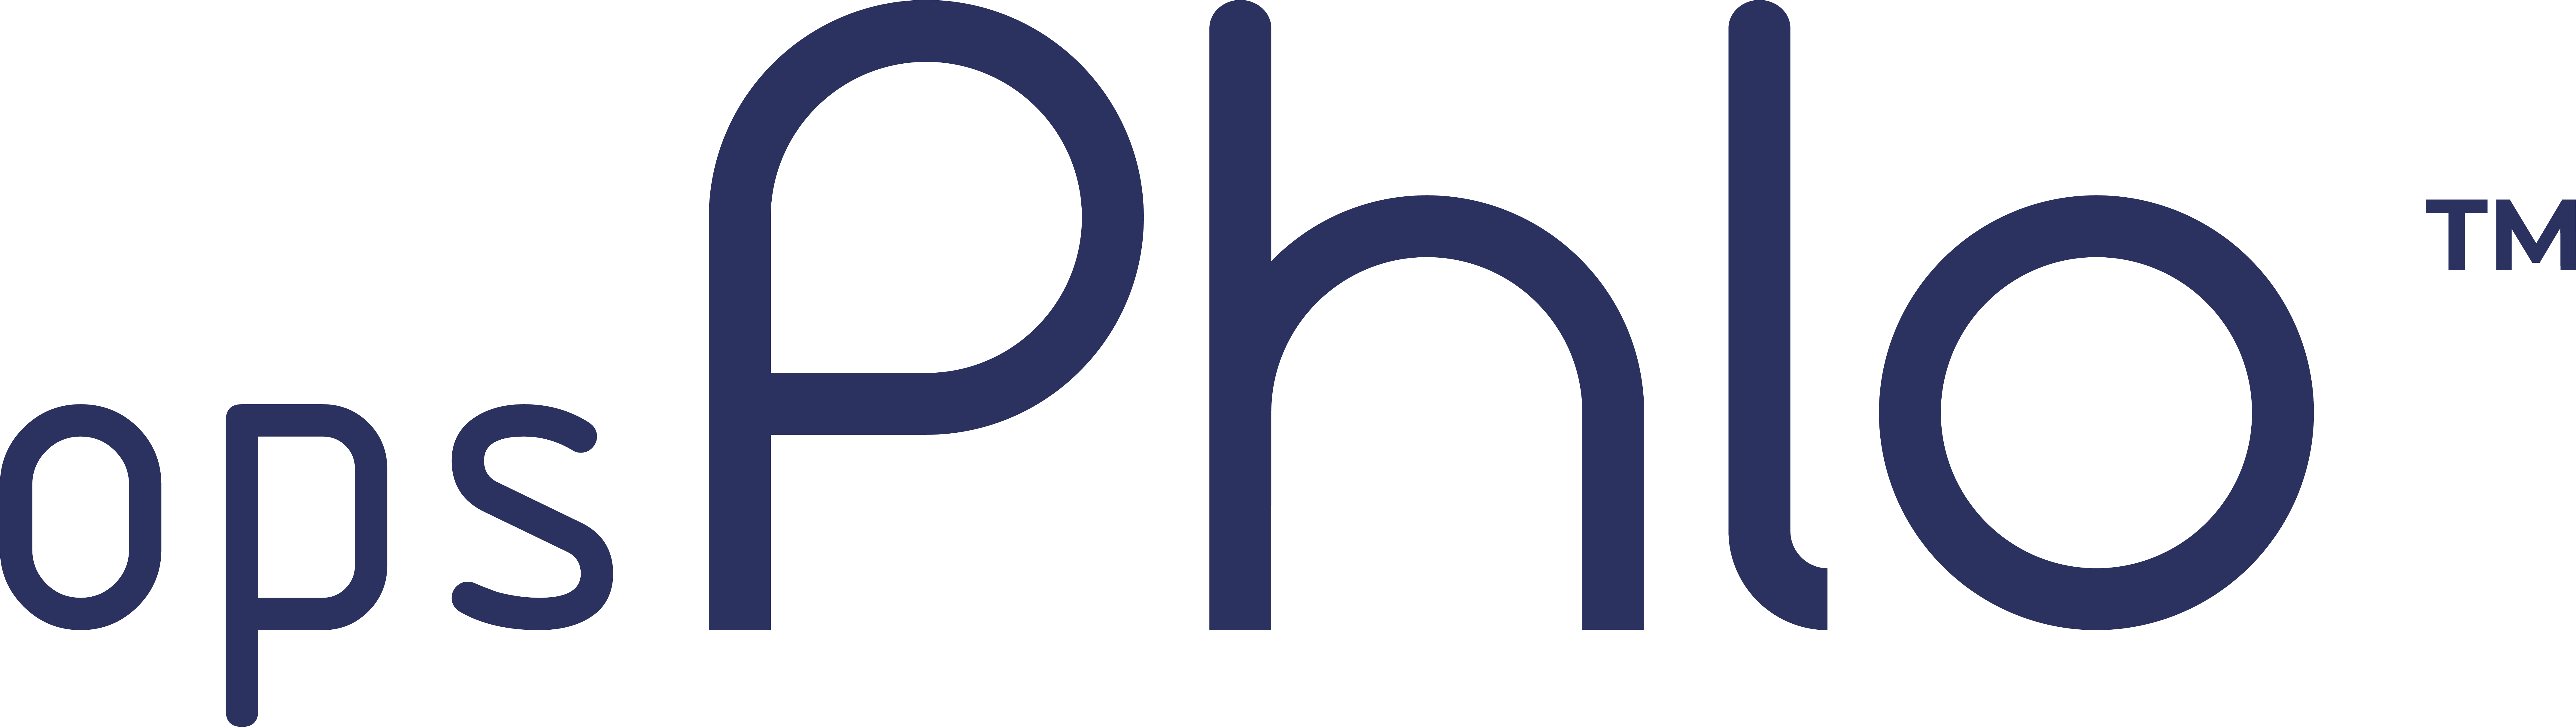 opsPhlo - Logiciel de gestion du commerce des matières premières et des risques avec ERP - Phlo Systems Limited